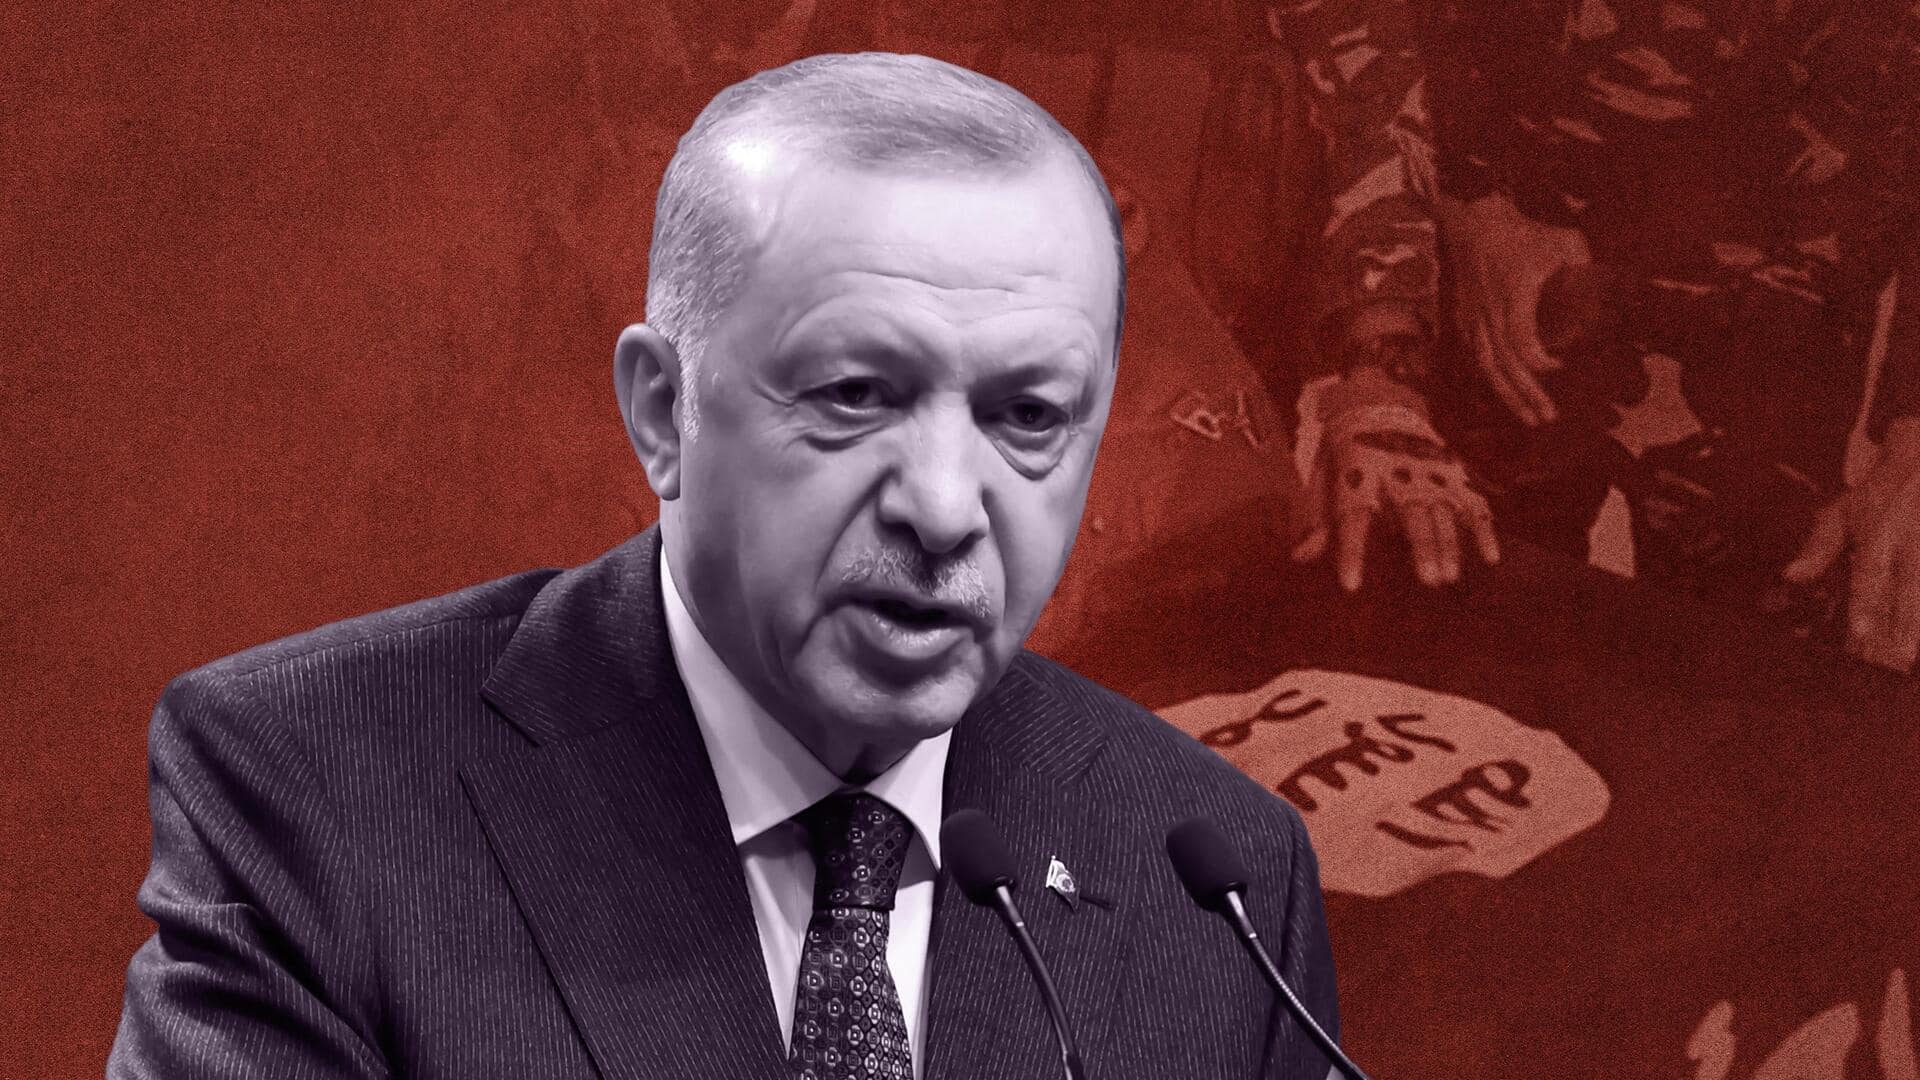 सीरिया में मारा गया IS का संदिग्ध प्रमुख अल कुरैशी, तुर्की के राष्ट्रपति अर्दोआन का दावा